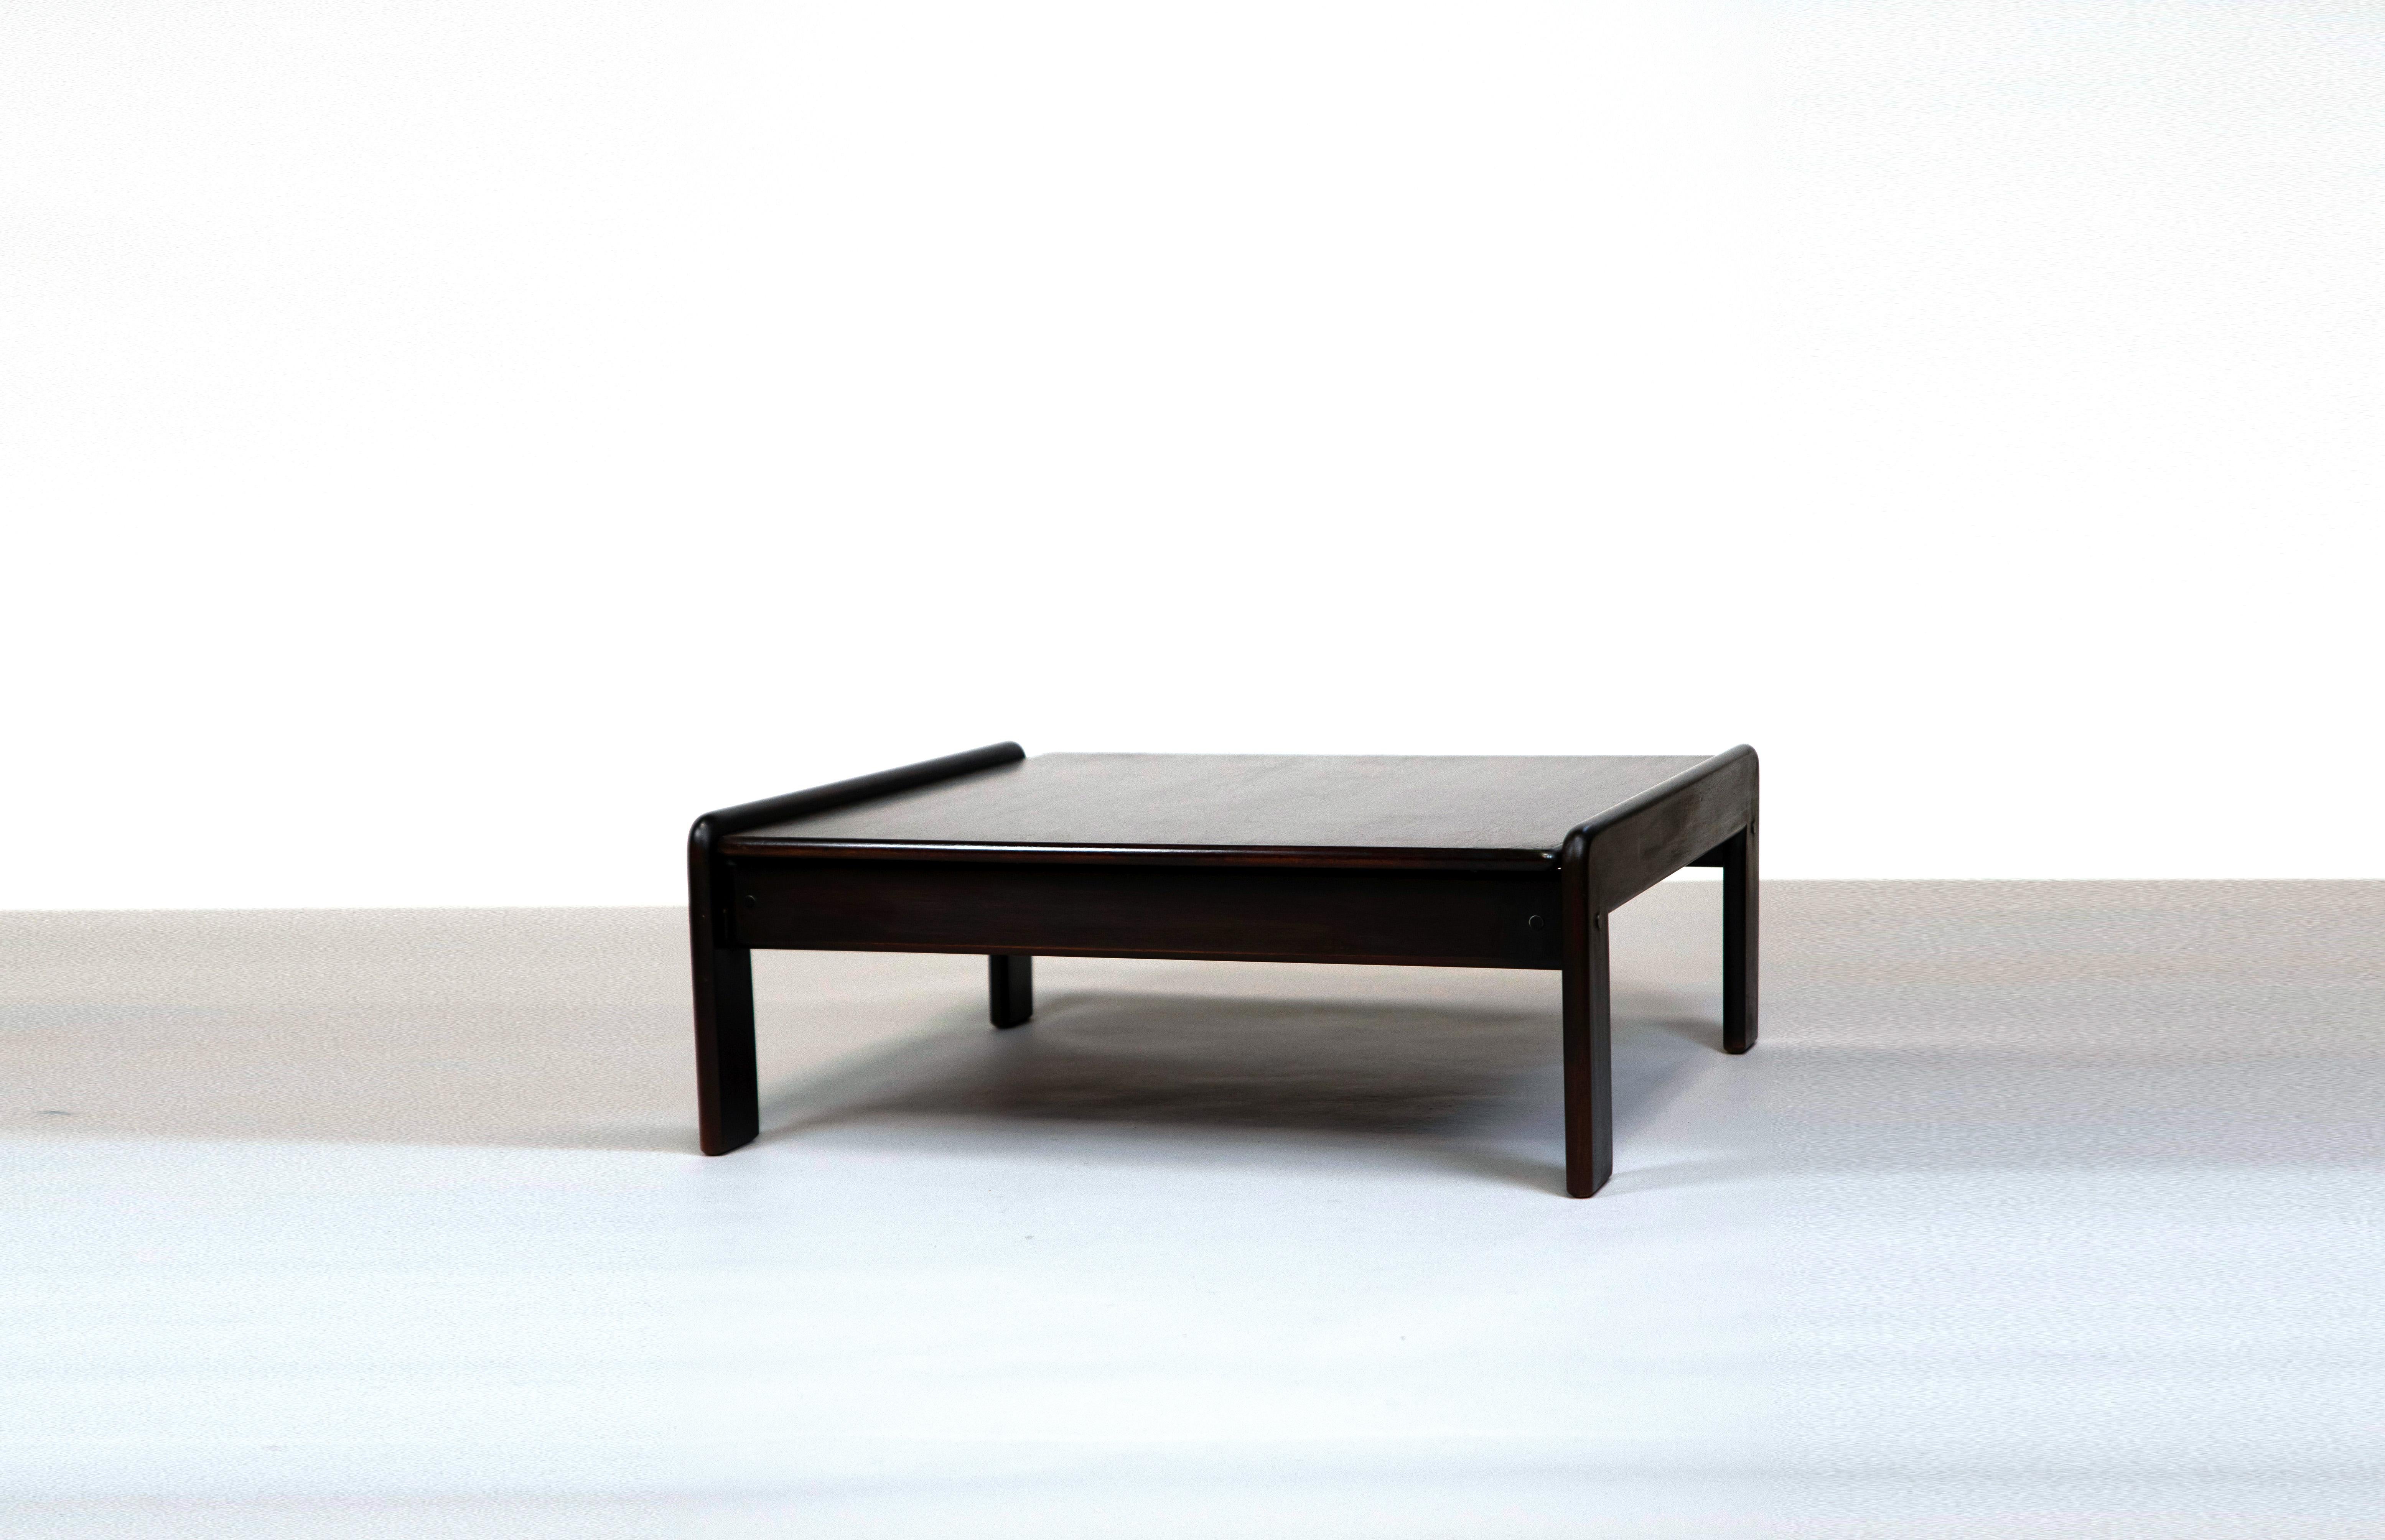 Geraldo de Barros, Center Table, c. 1970
Wood and wood veneer, 31 x 79 x 85 cm.

This wooden table and veneer by Geraldo de Barros for 